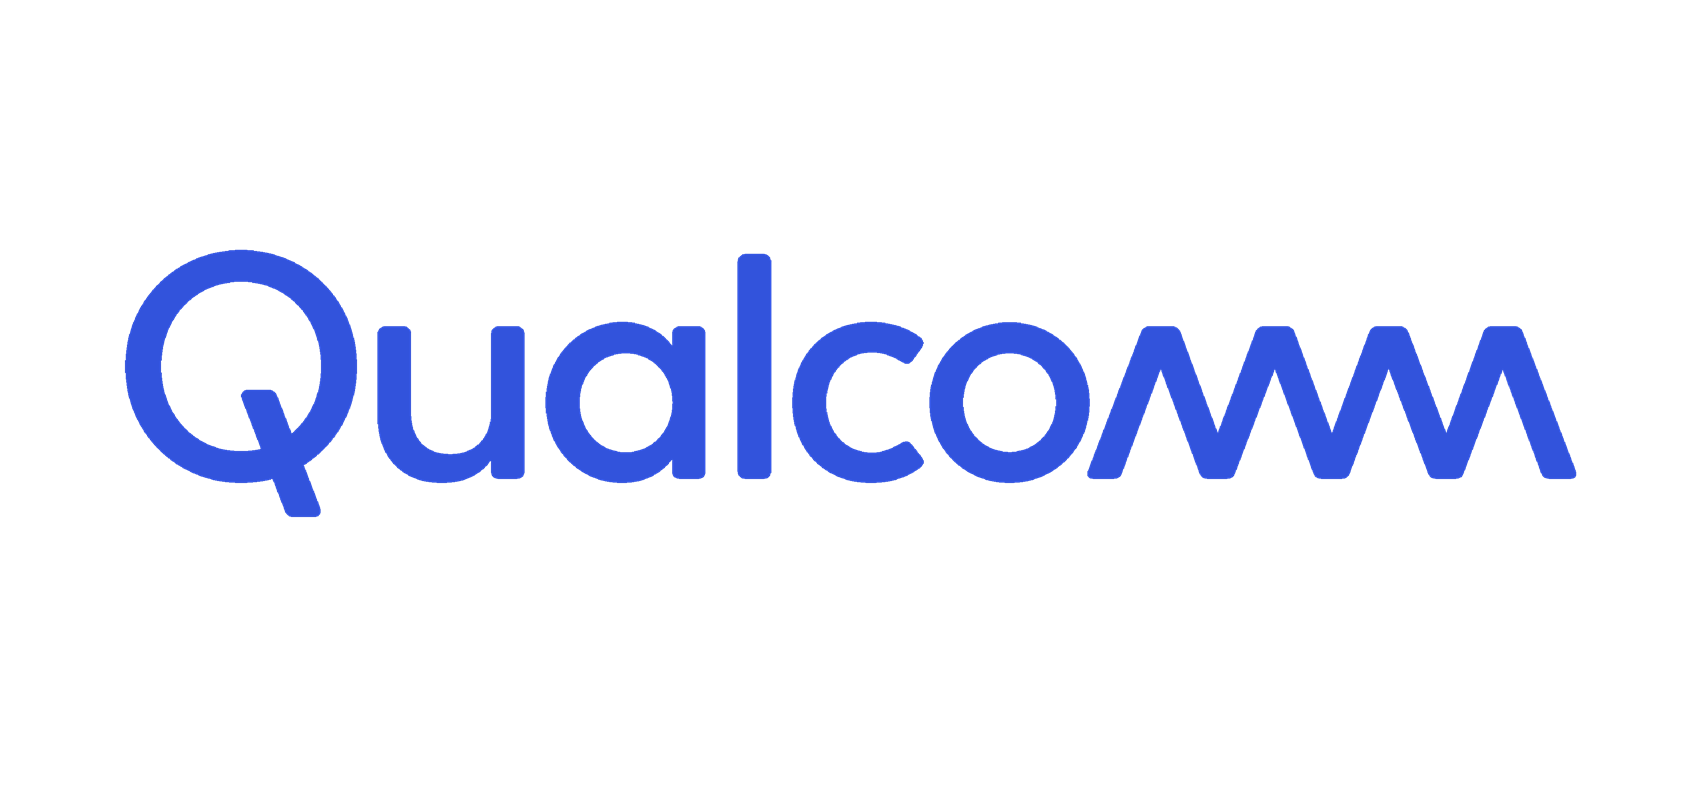 Qualcomm partner logo